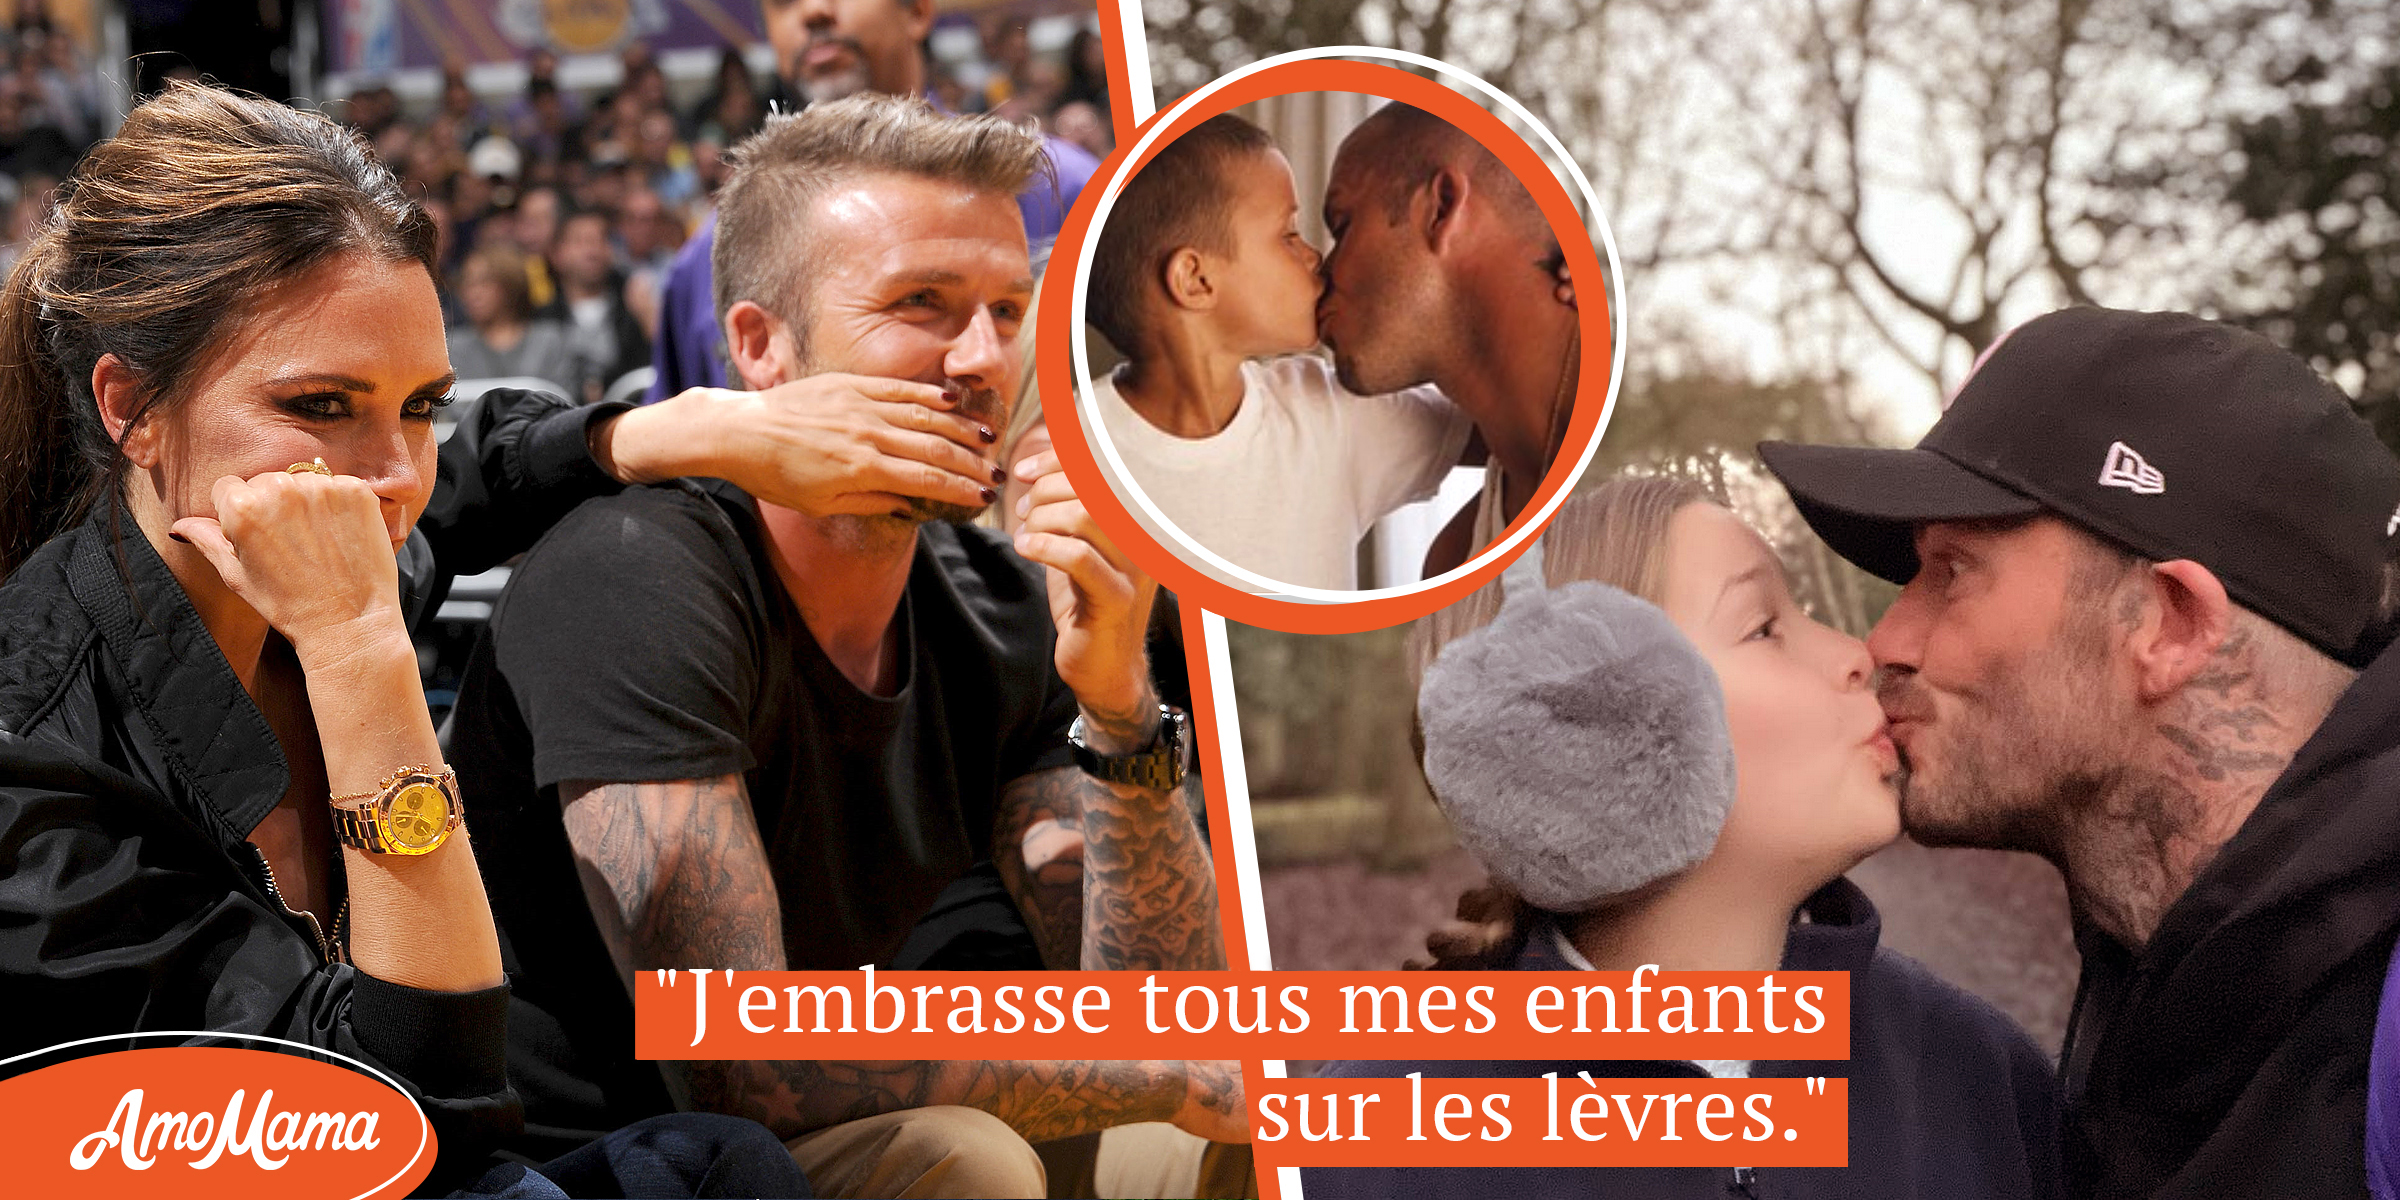 “Vous êtes complètement malade” : David Beckham critiqué pour avoir embrassé Harper sur les lèvres – Lui et sa femme Victoria sont des parents “affectueux”